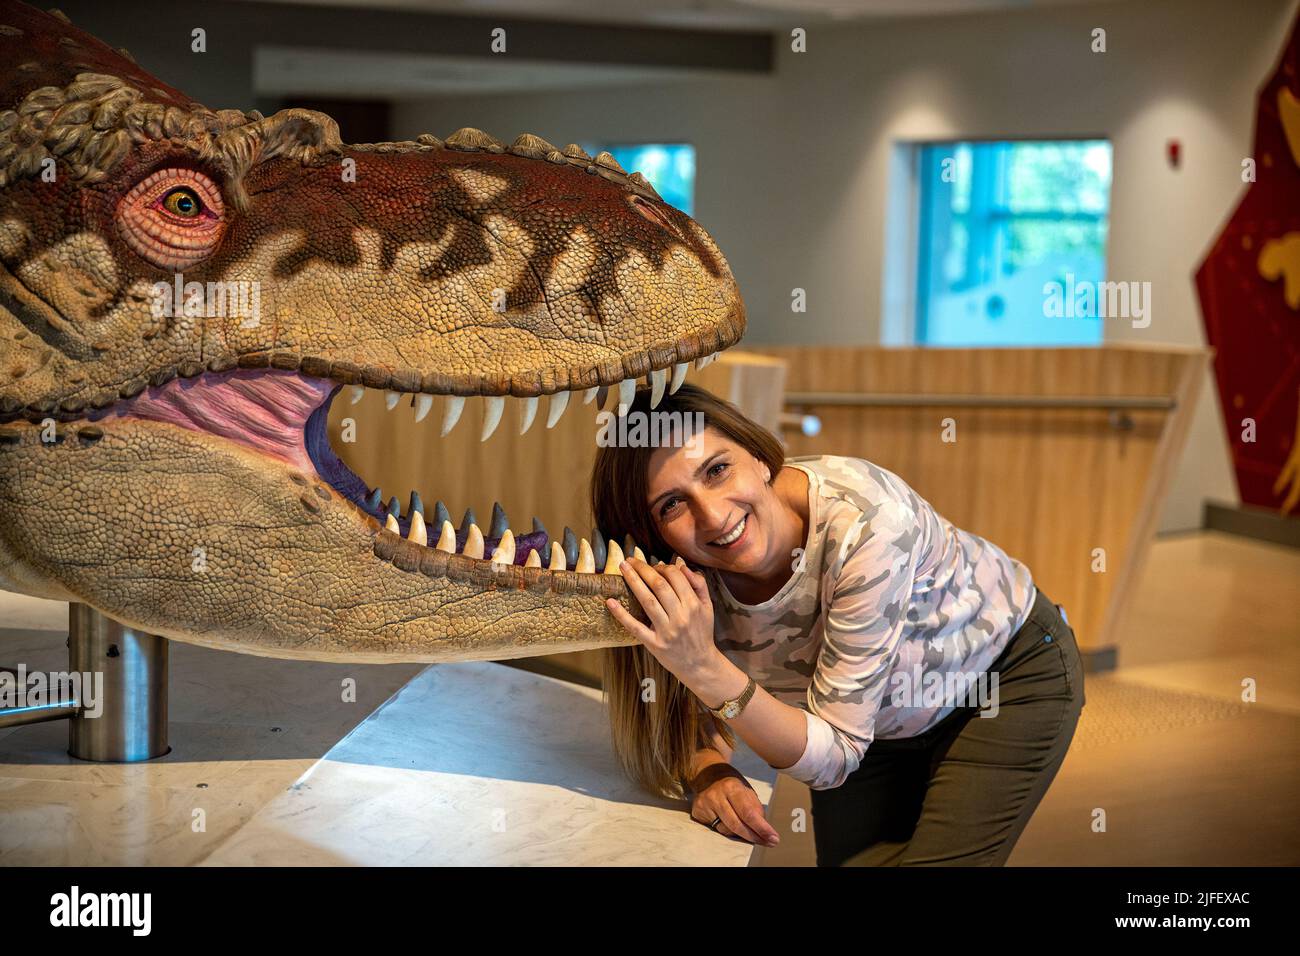 Das Royal Tyrrell Museum of Paleontology ist Kanadas einziges Museum, das ausschließlich der Erforschung des prähistorischen Lebens gewidmet ist. Zusätzlich zu einem Stockfoto